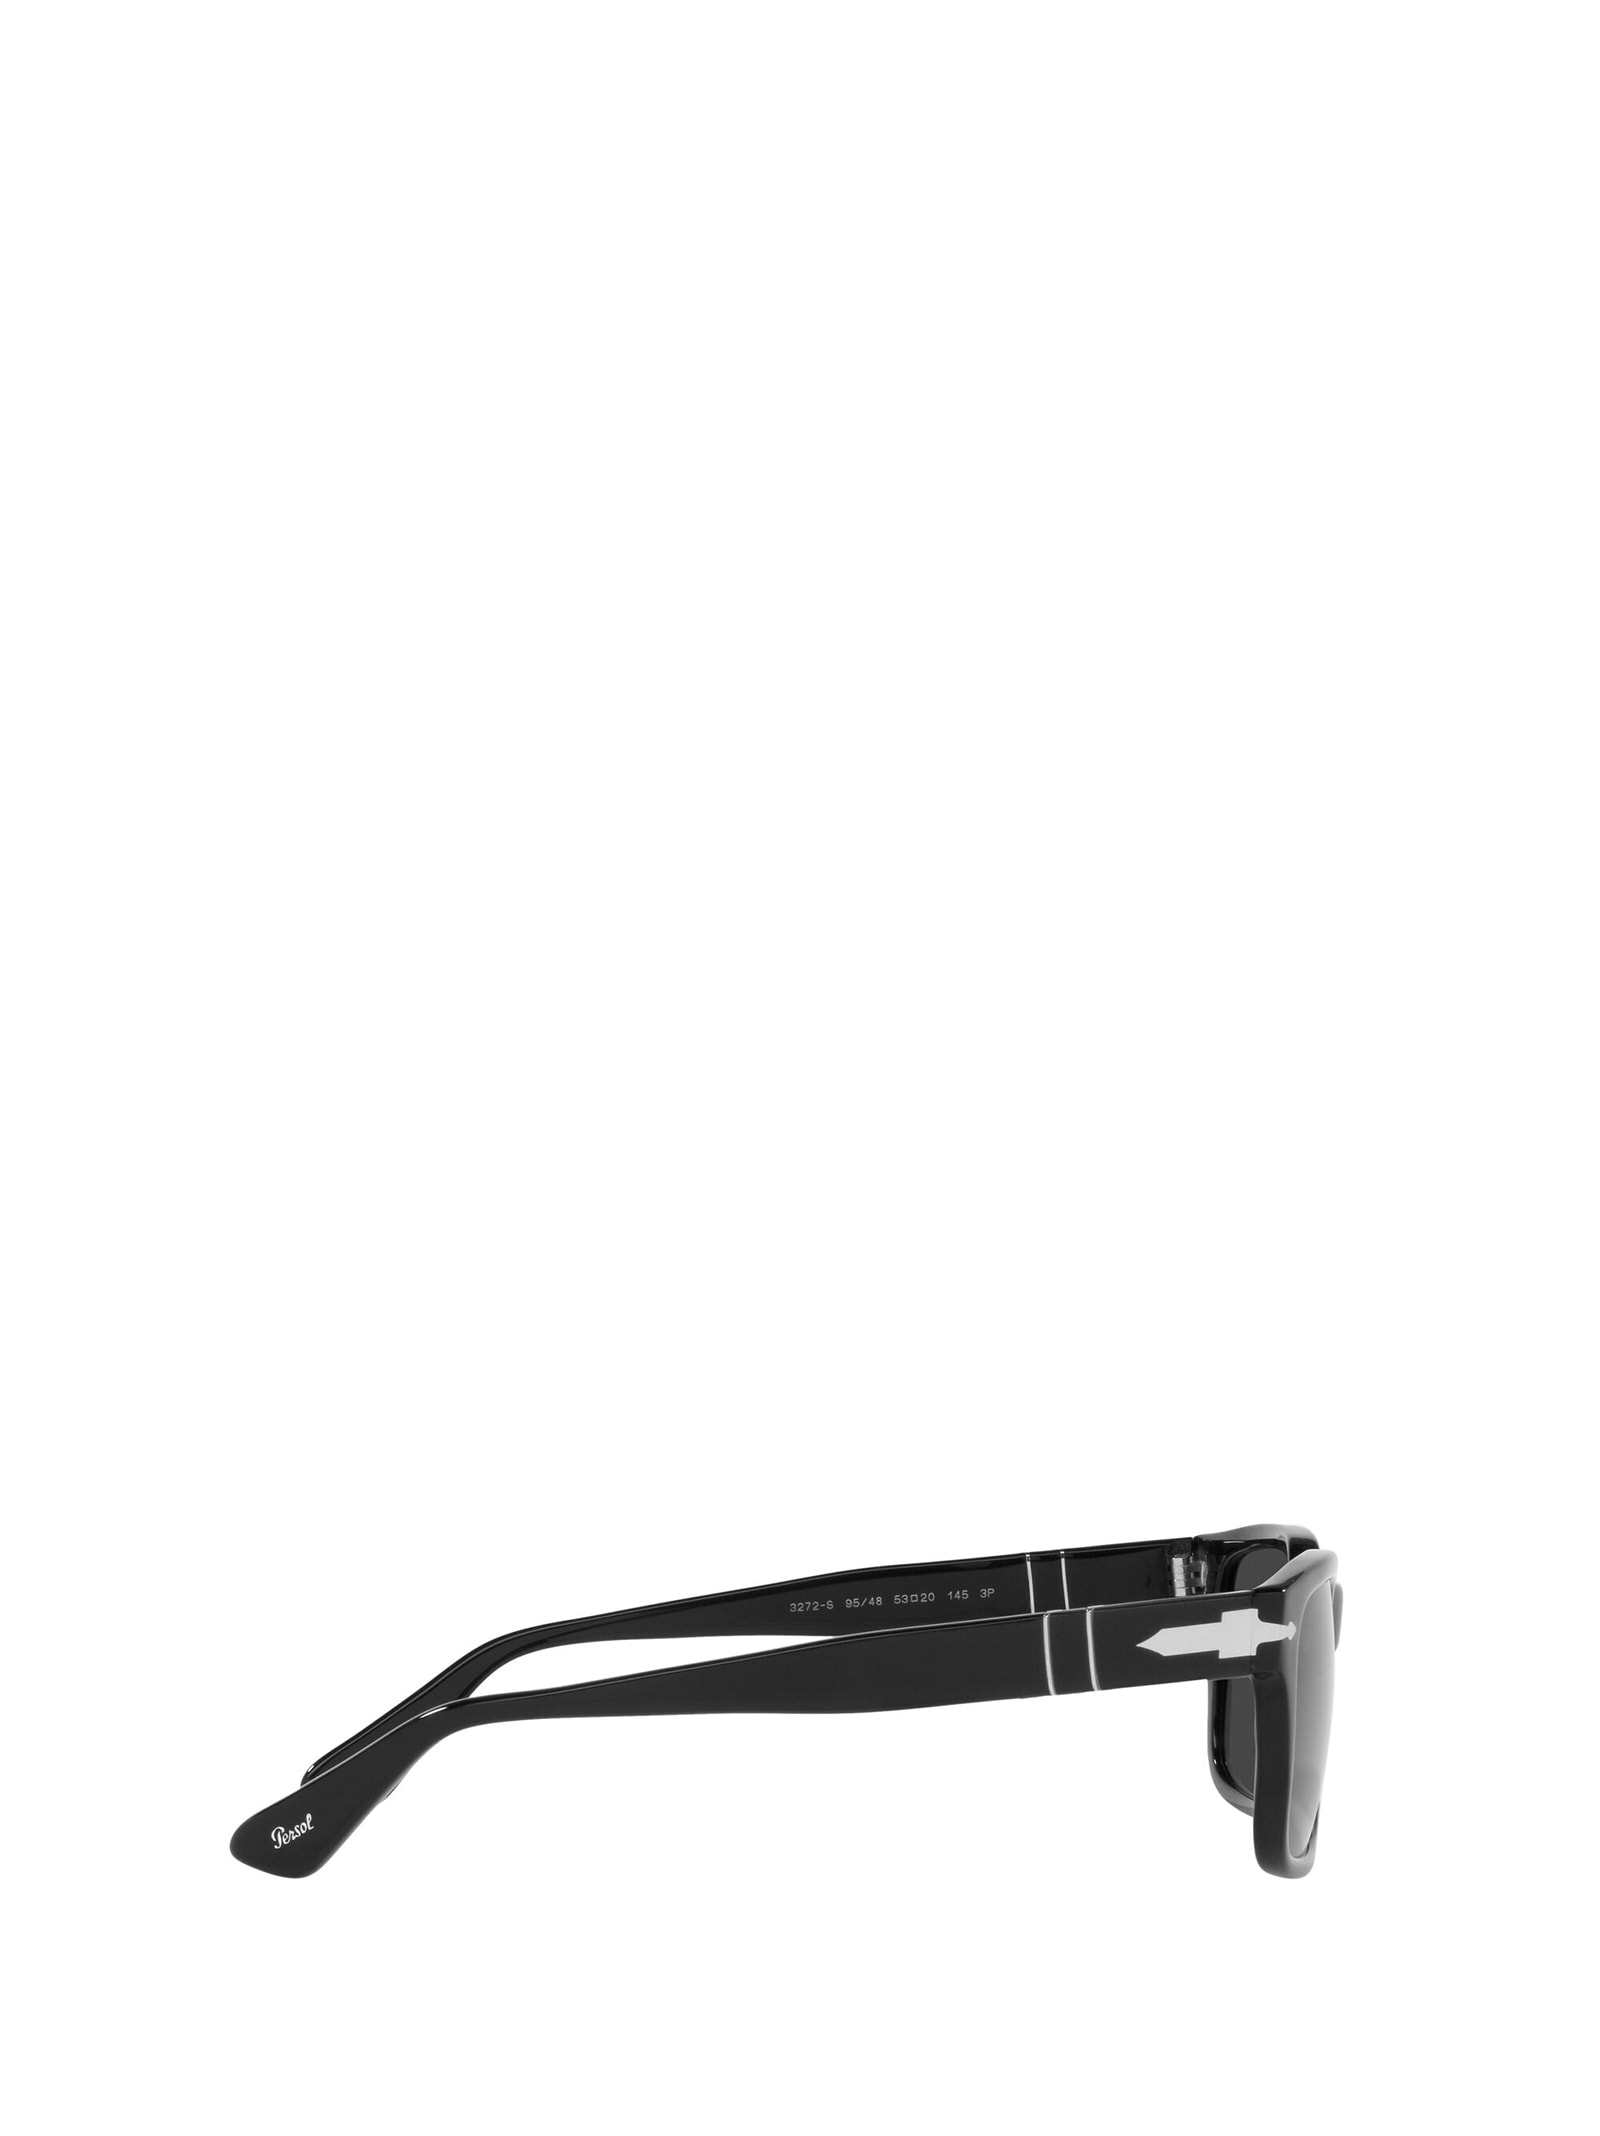 Shop Persol Po3272s Black Sunglasses